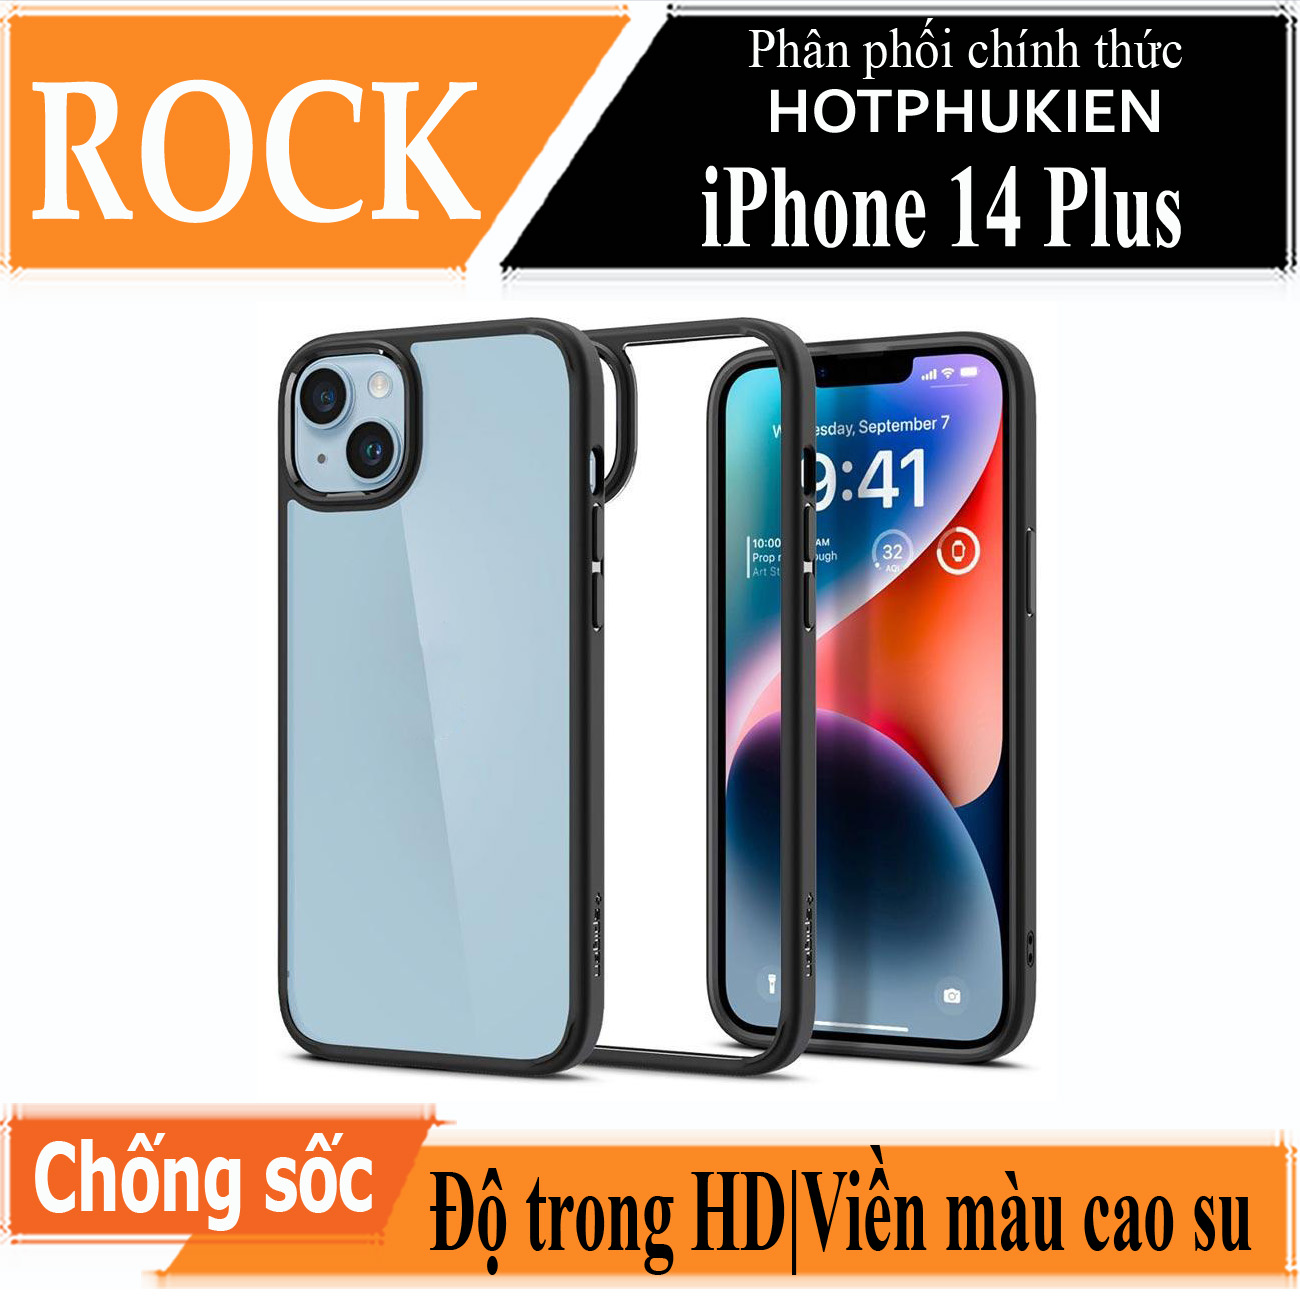 Ốp lưng viền cao su cho iPhone 14 Plus (6.7 inch) Hiệu Rock hybrid Protective Case